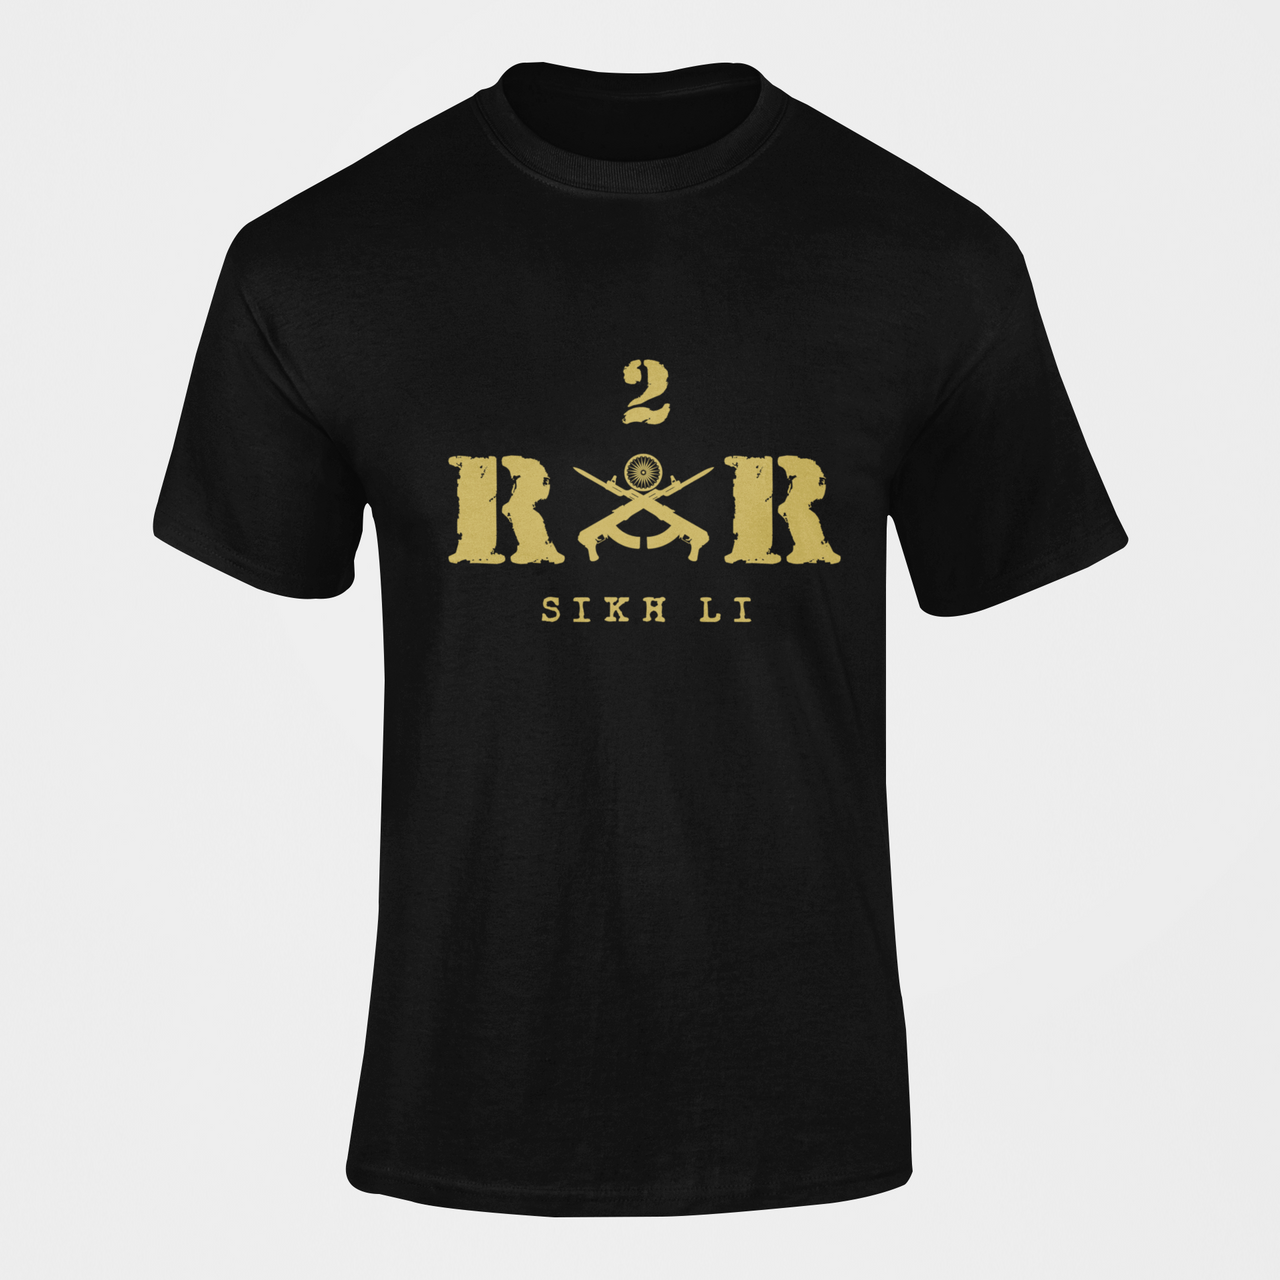 Rashtriya Rifles T-shirt - 2 RR Sikh Li (Men)